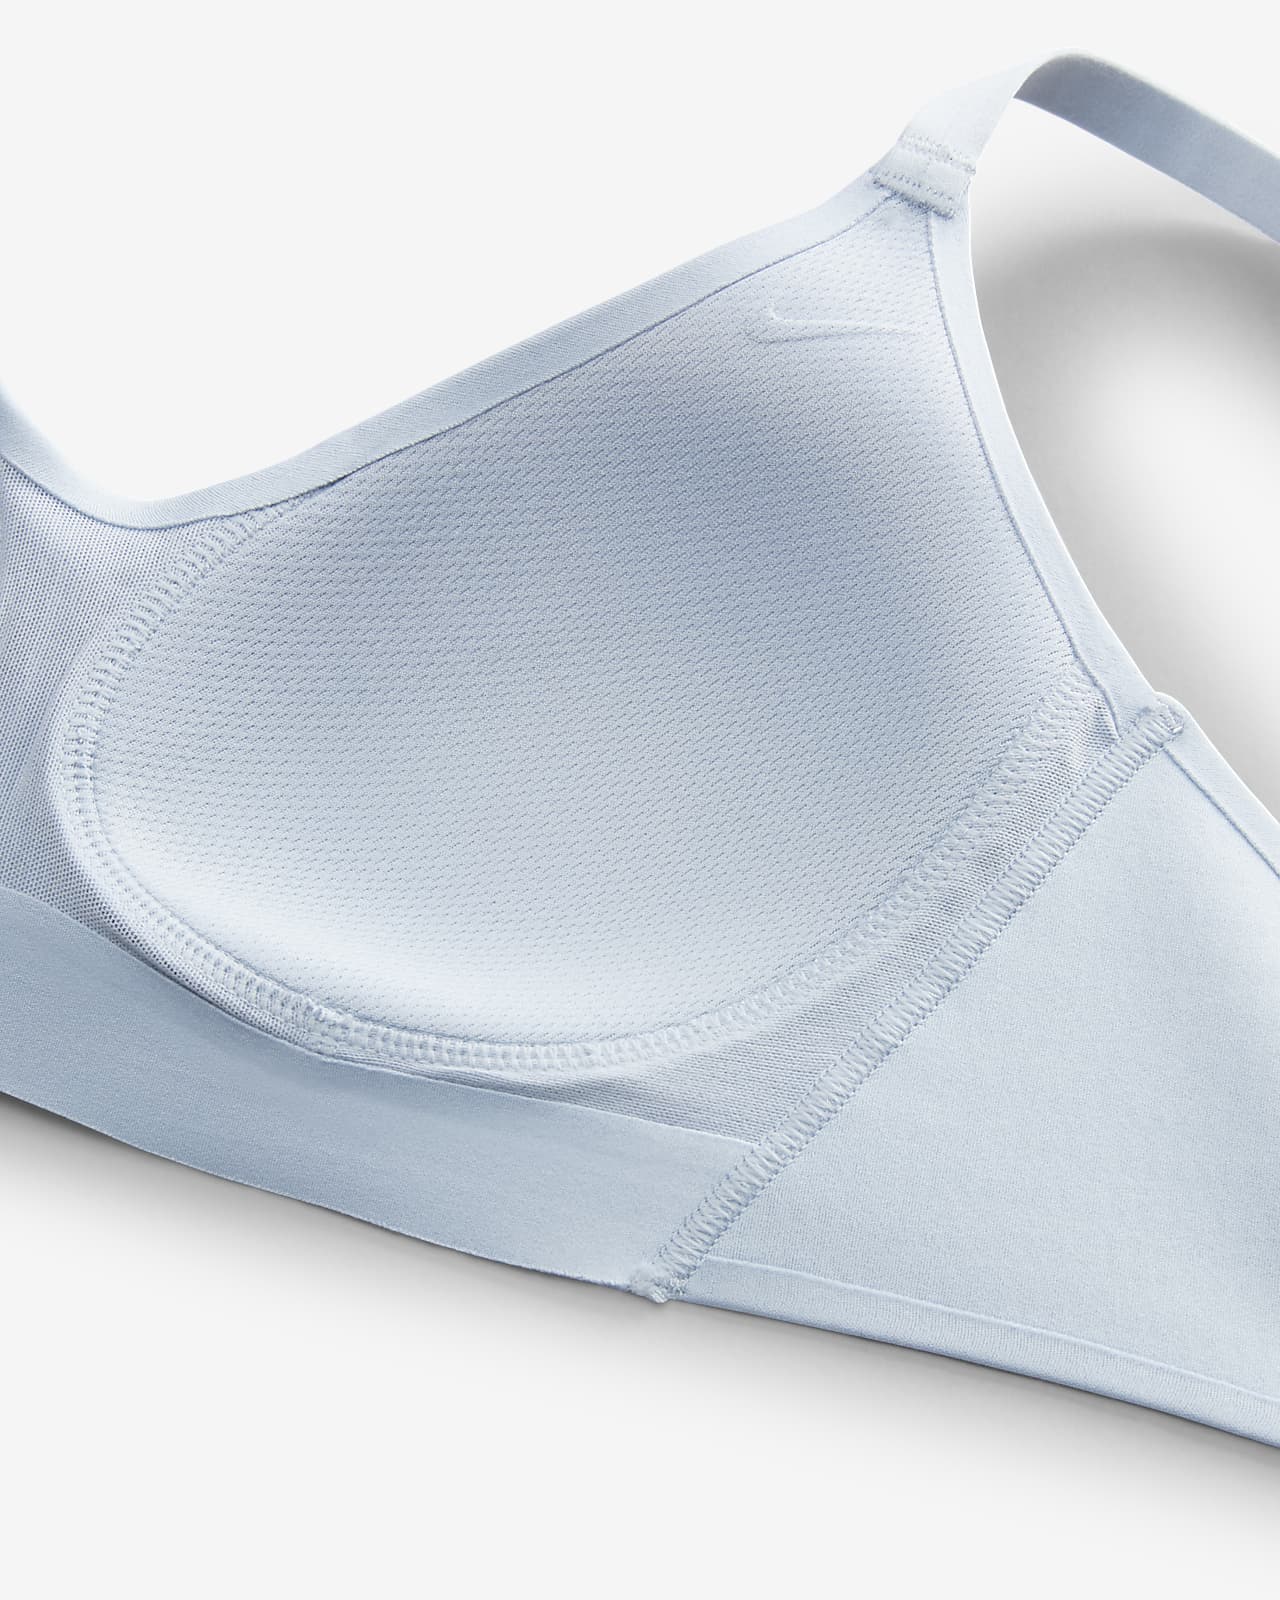 Nike Alate Minimalist Light-Support Padded Dri-FIT Sports Bra